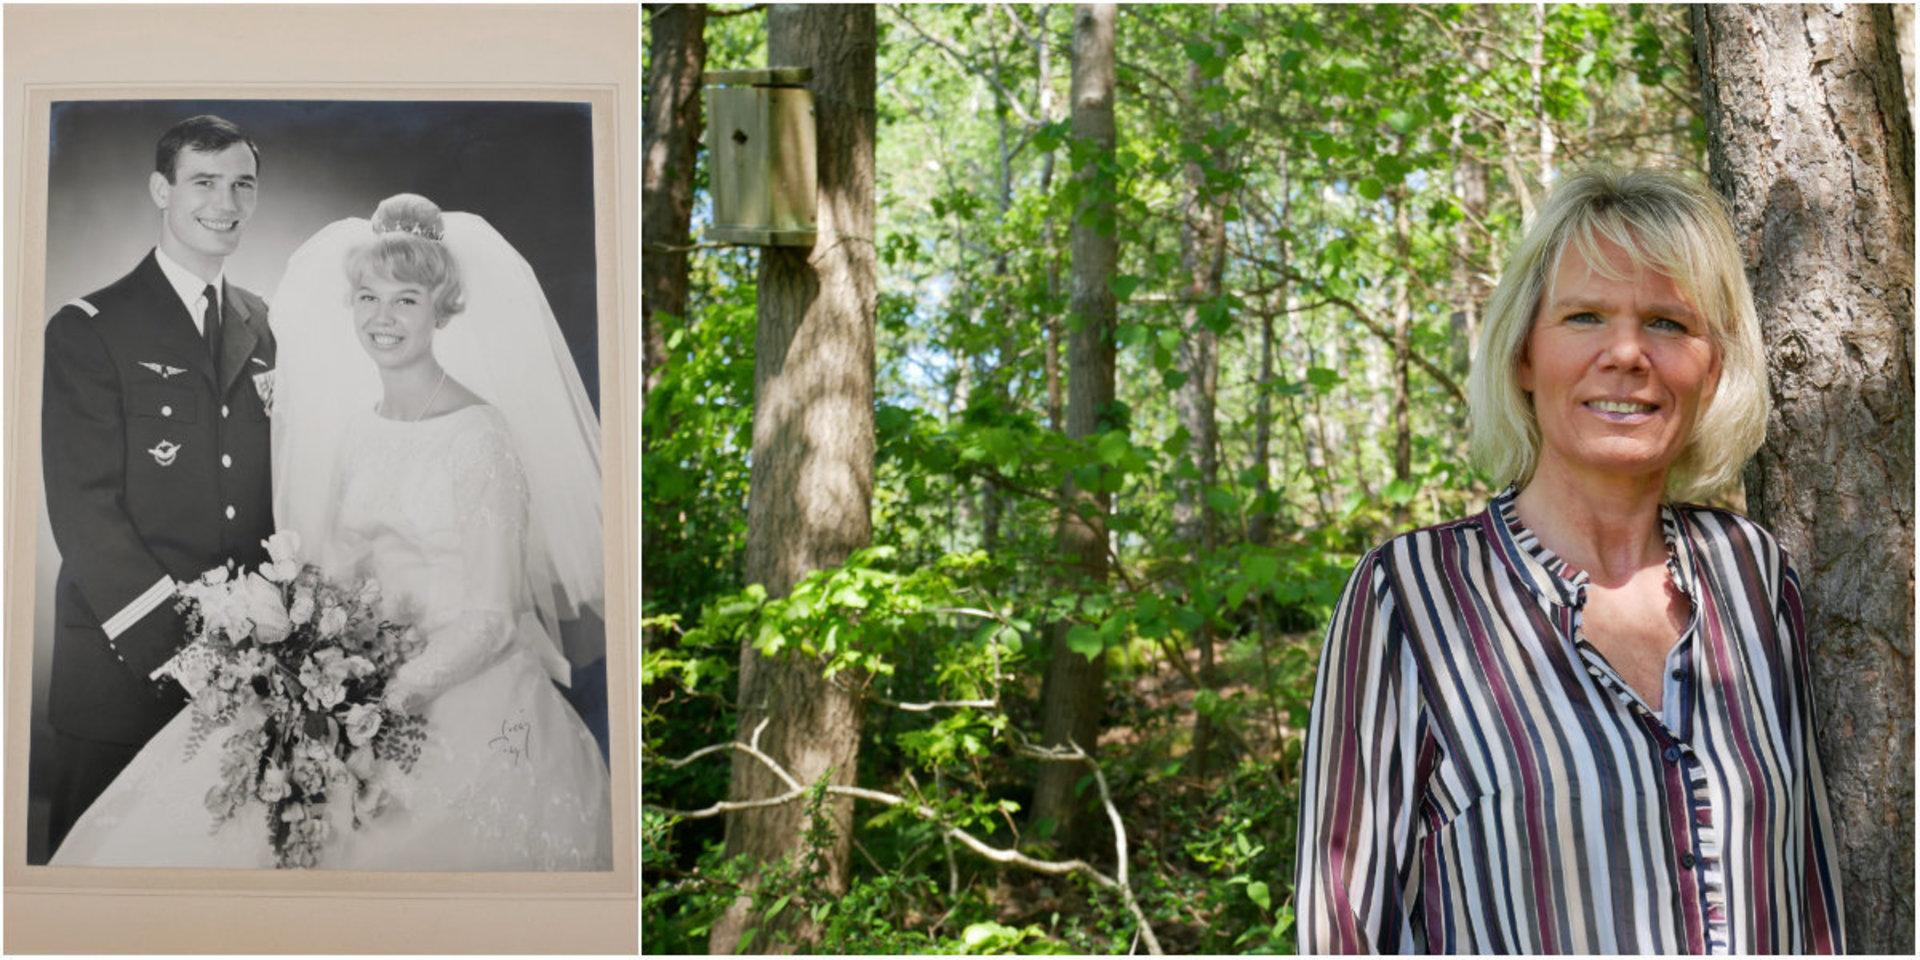 För drygt 50 år sedan omkom Helene Depui Ekdals pappa i en flygkrasch, blott 30 år gammal. Bröllopsfotot på pappa Jean och mamma Ingrid är ett kärt bildminne för Helene.